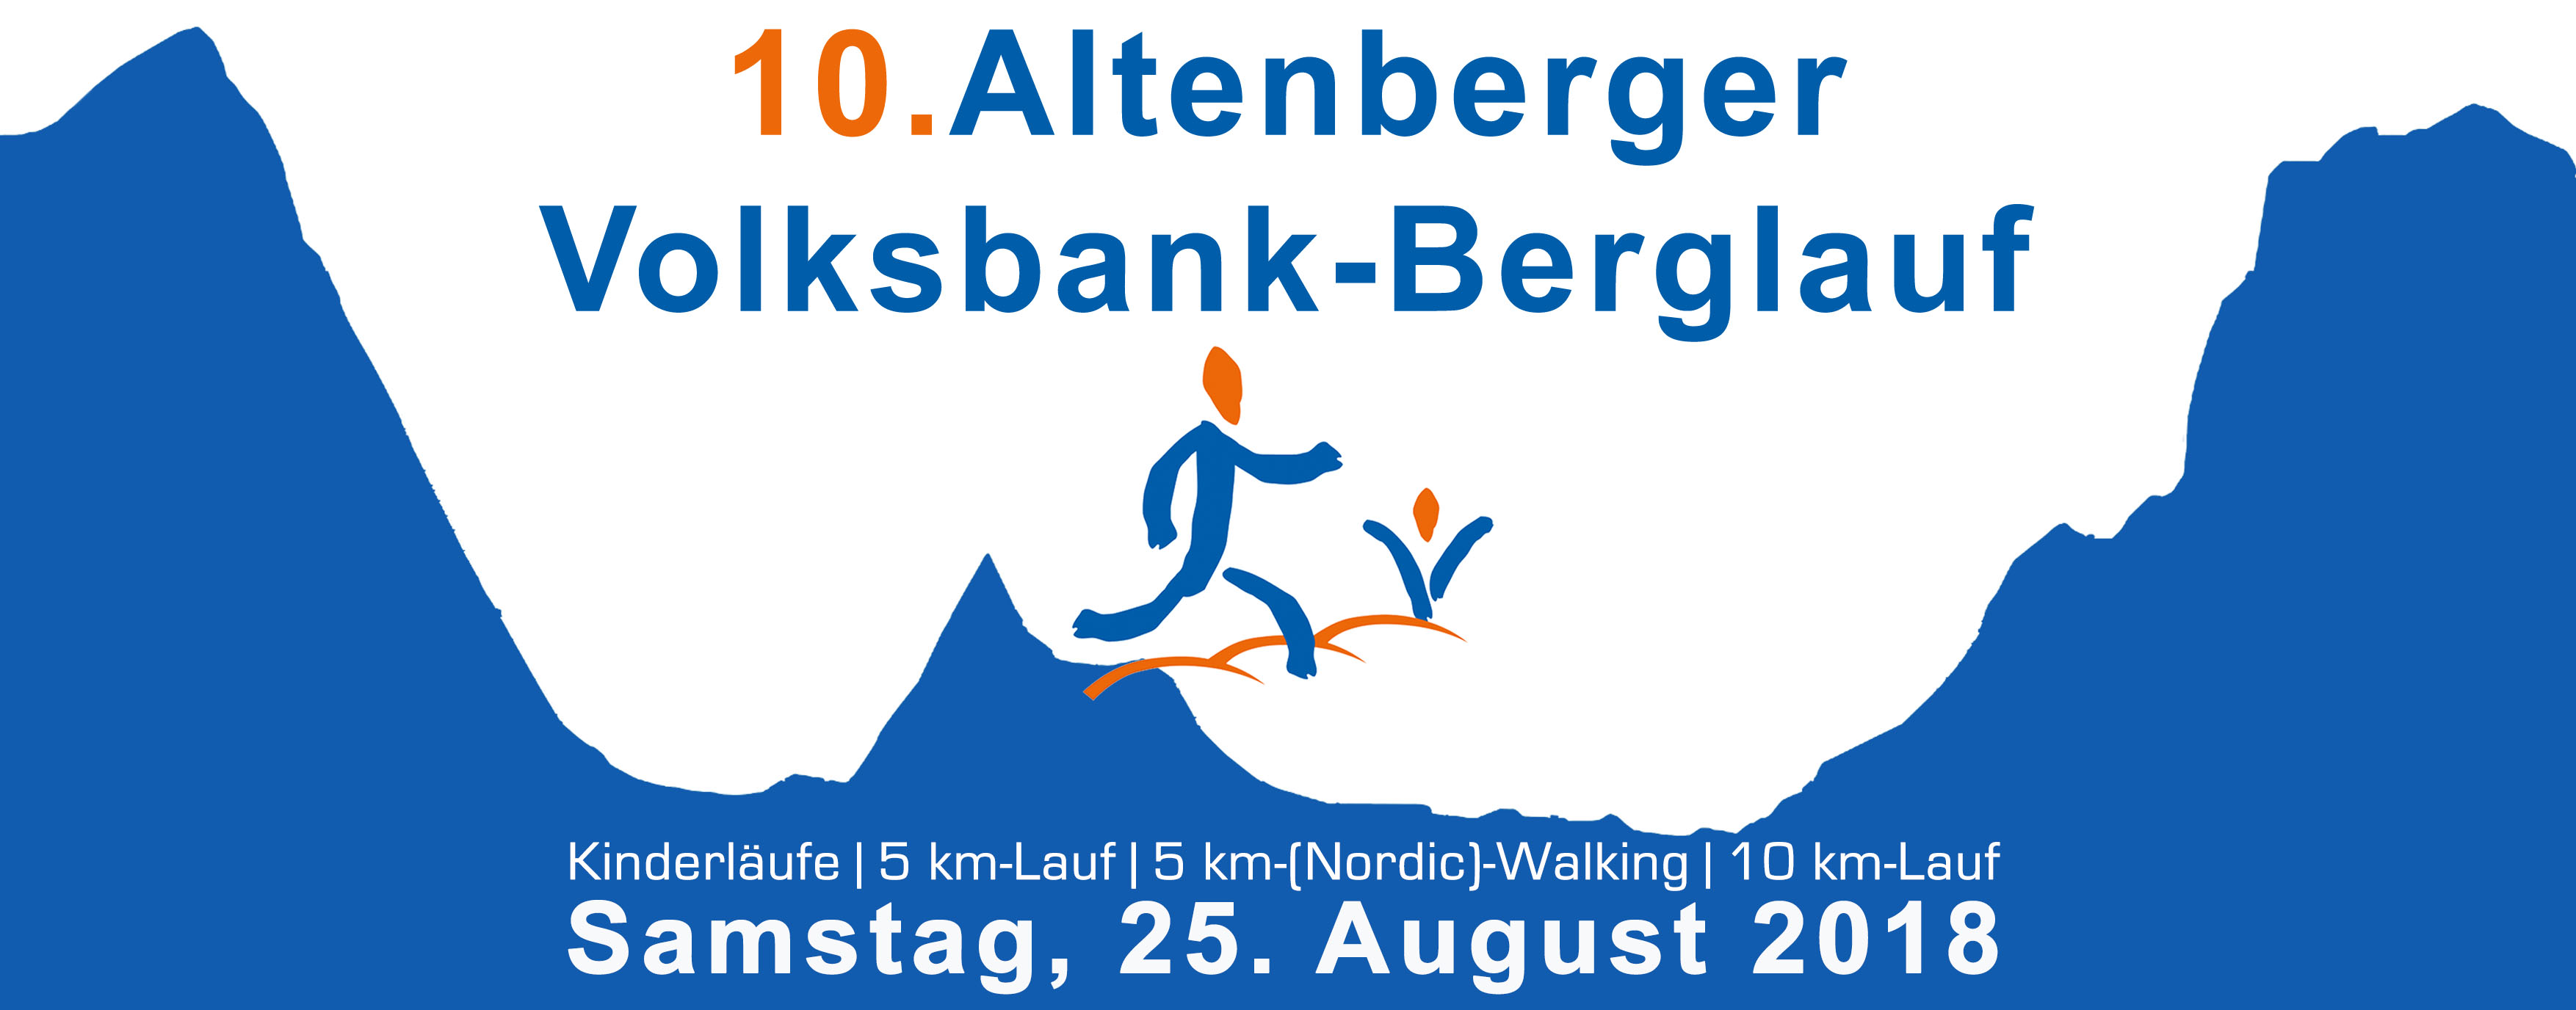 Streckenverlauf – 10. Altenberger Volksbank-Berglauf